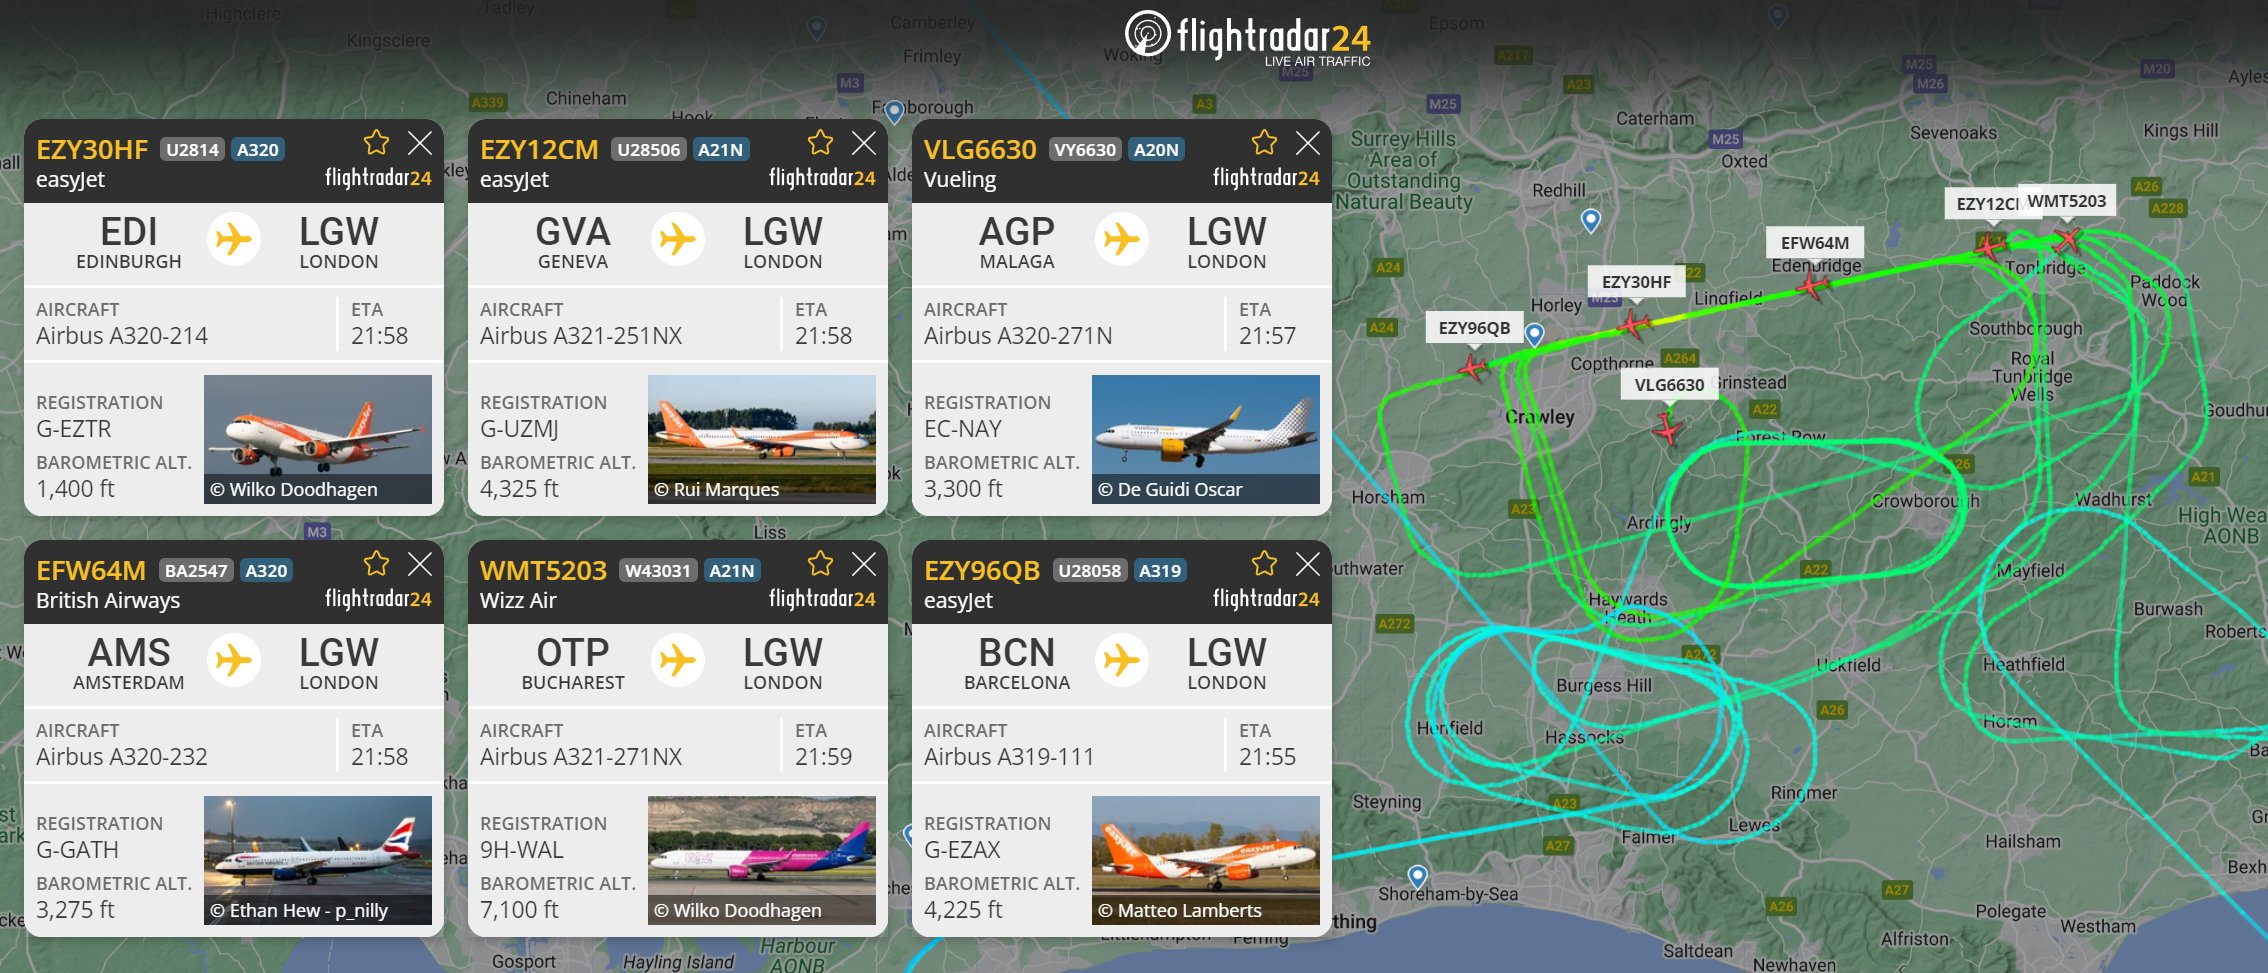 Tình trạng hỗn loạn tại sân bay Gatwick (London, Anh) được ghi lại trên bản đồ FlightRadar24, nhiều chuyến phải thay đổi điểm đến tới các sân bay tại Pháp, Hà Lan, Đức,...